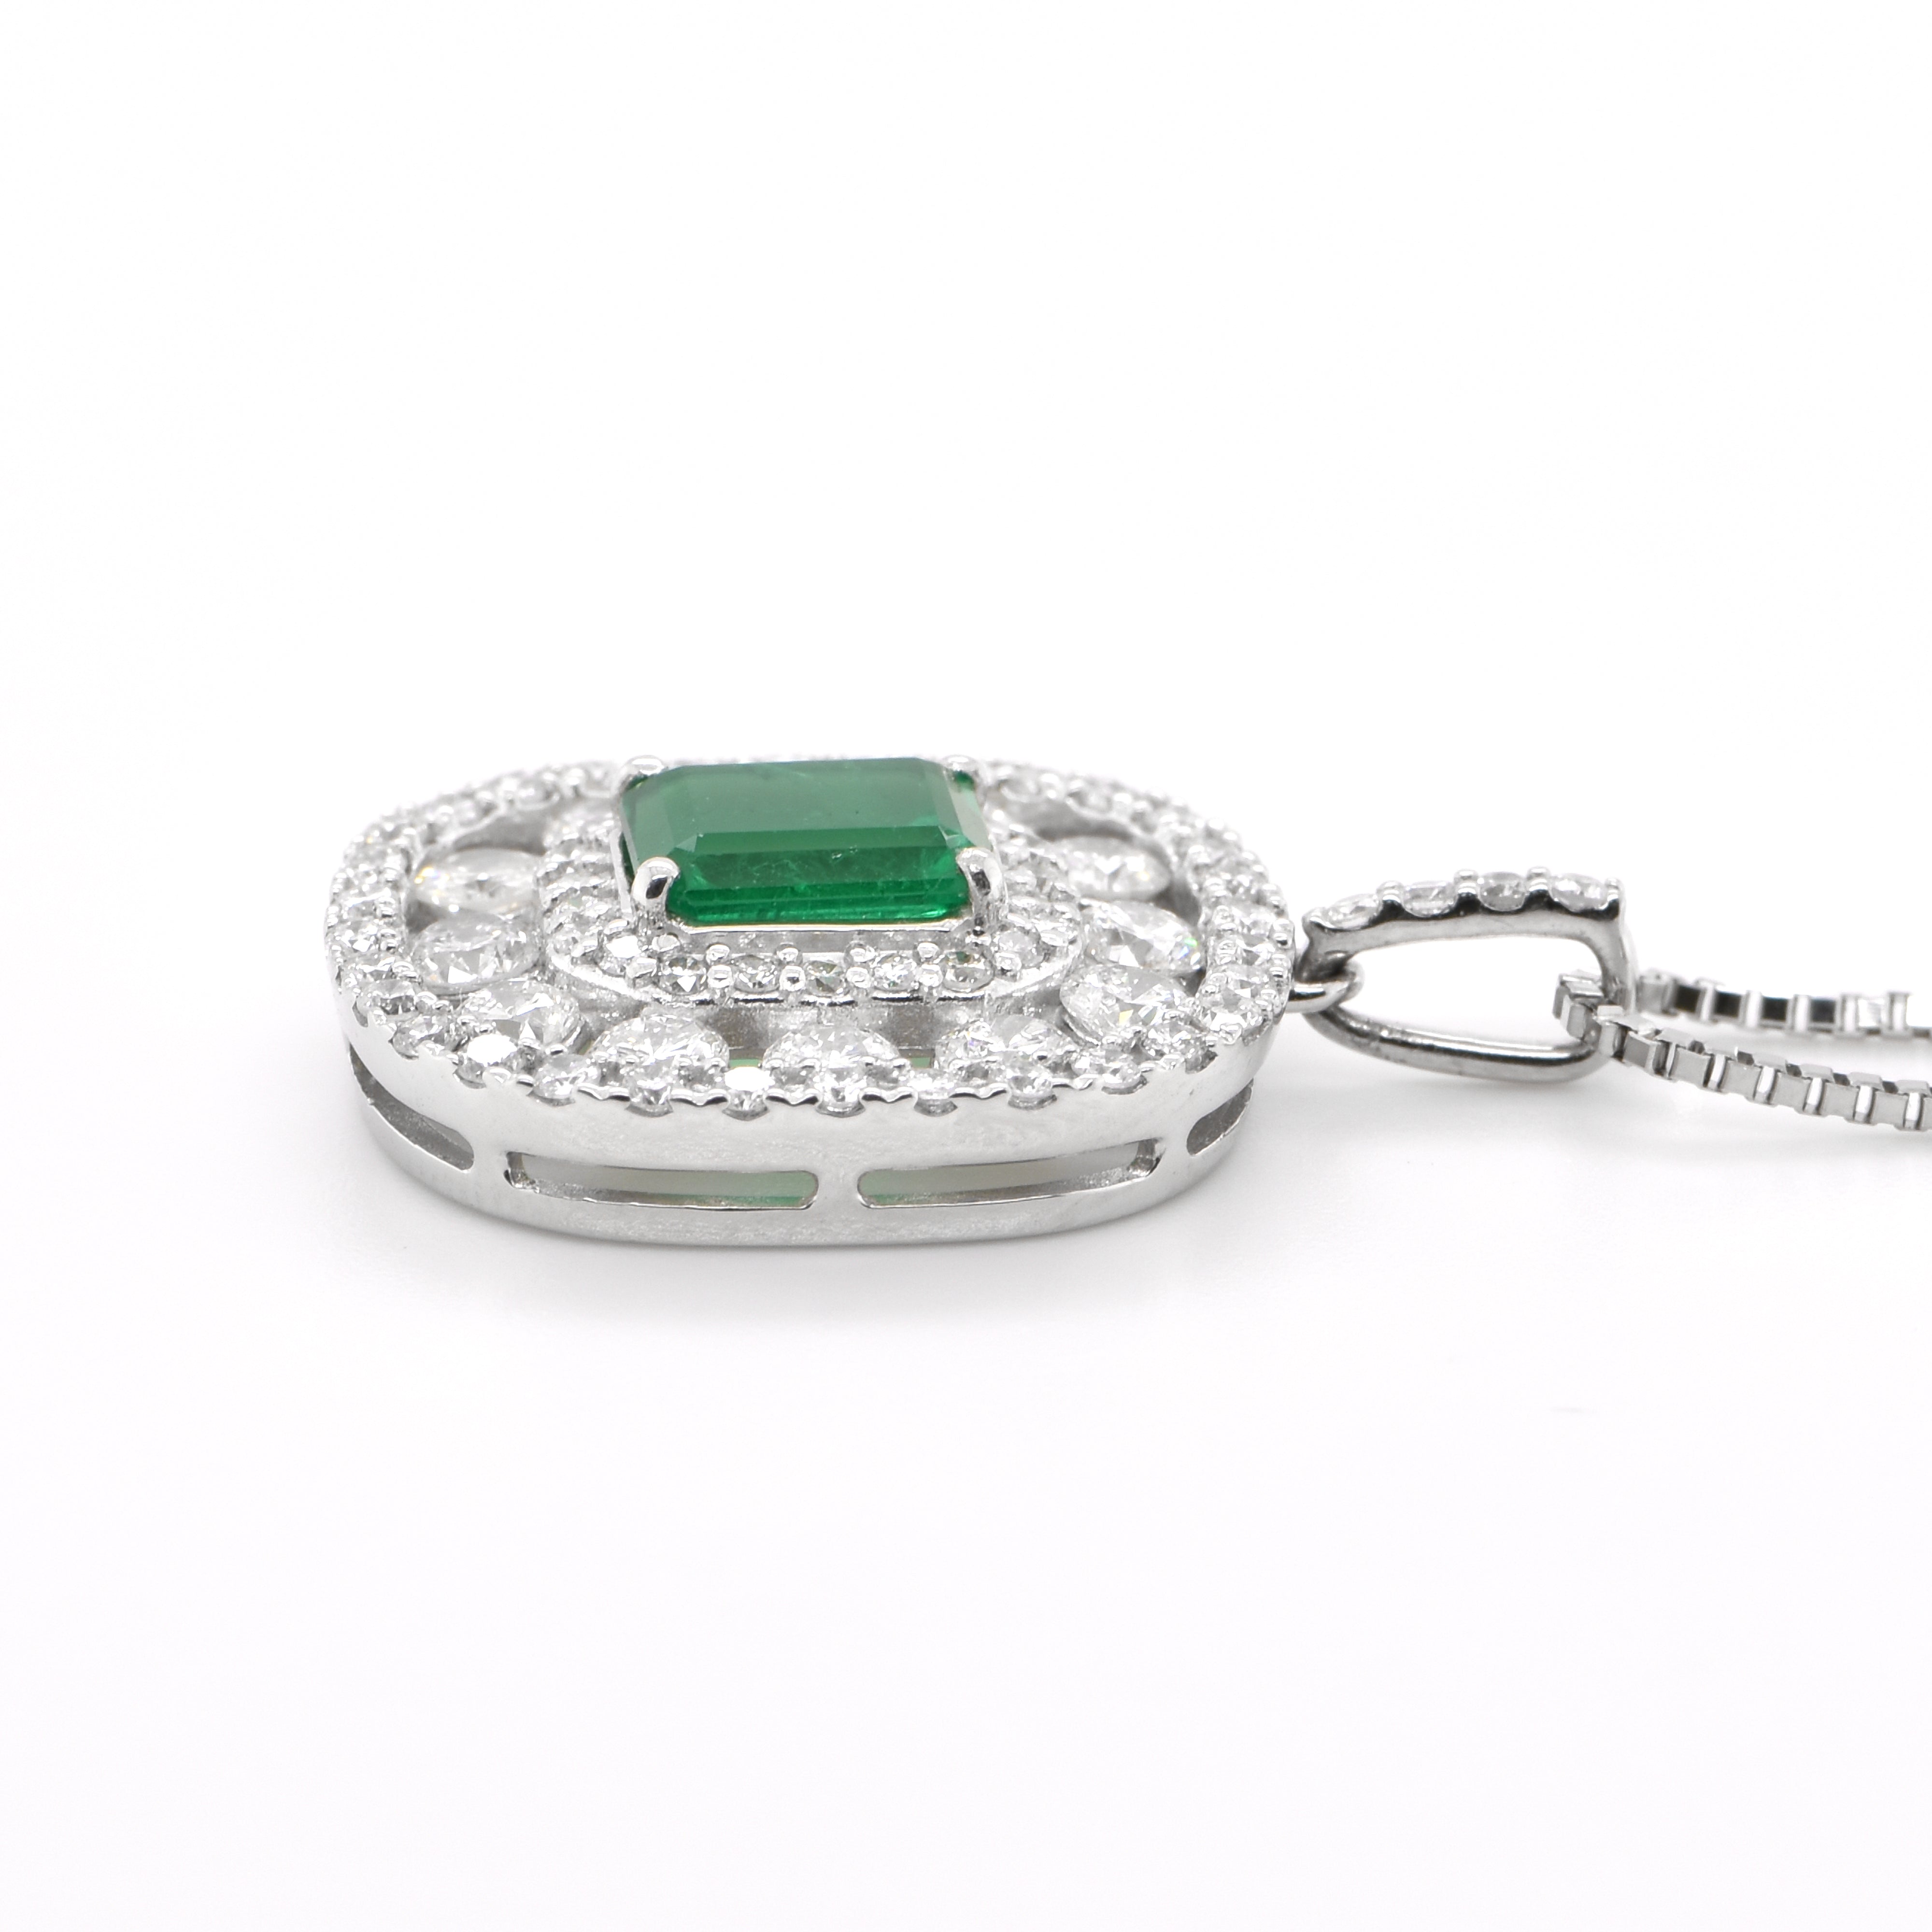 0.92 Carat Natural Emerald and Diamond Pendant set in Platinum